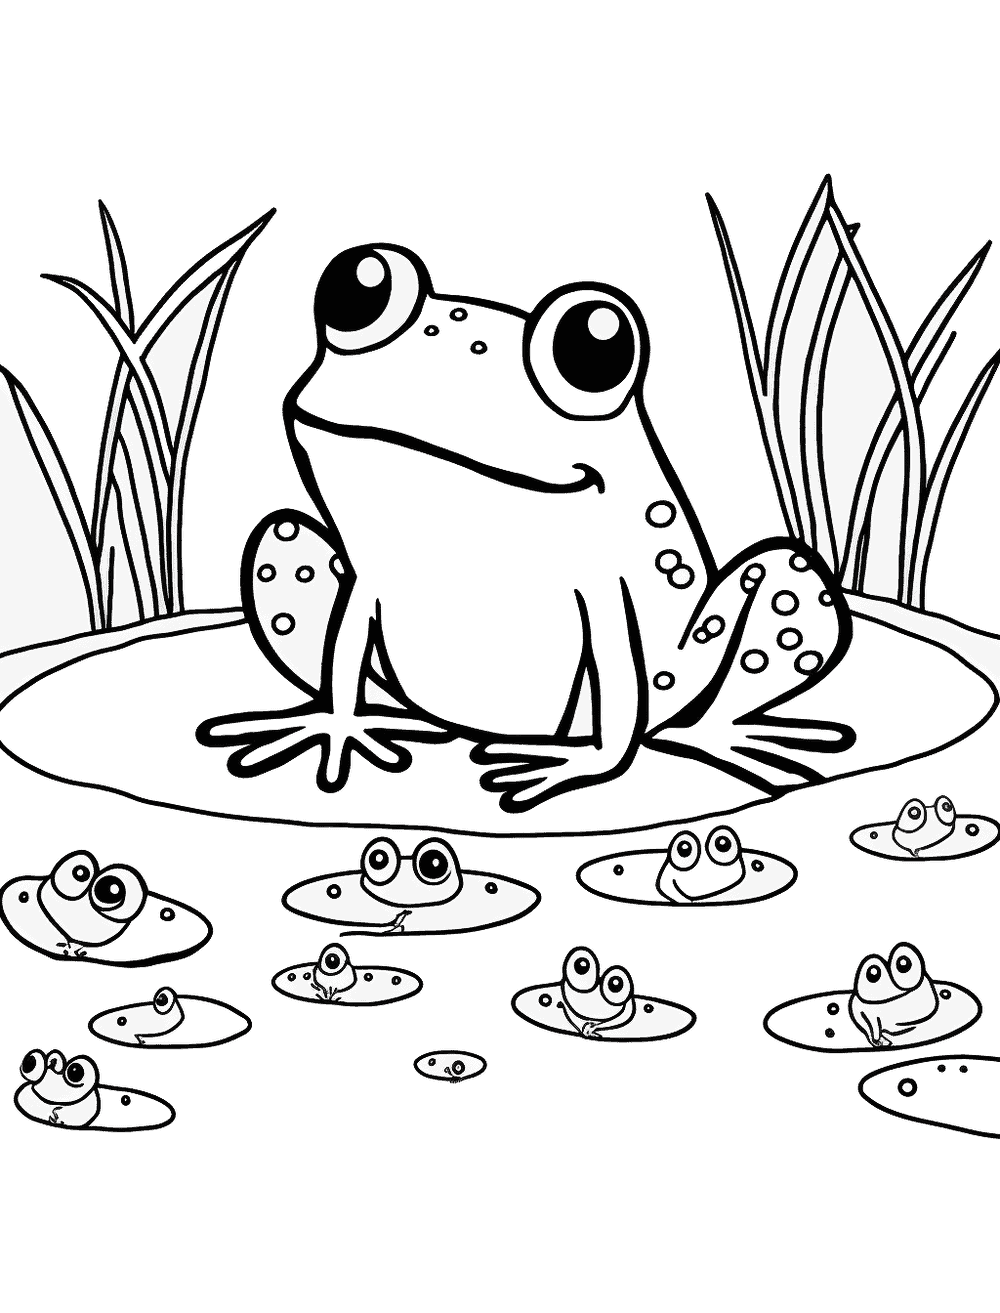 Dibujos para Colorear Frogs In A Pond